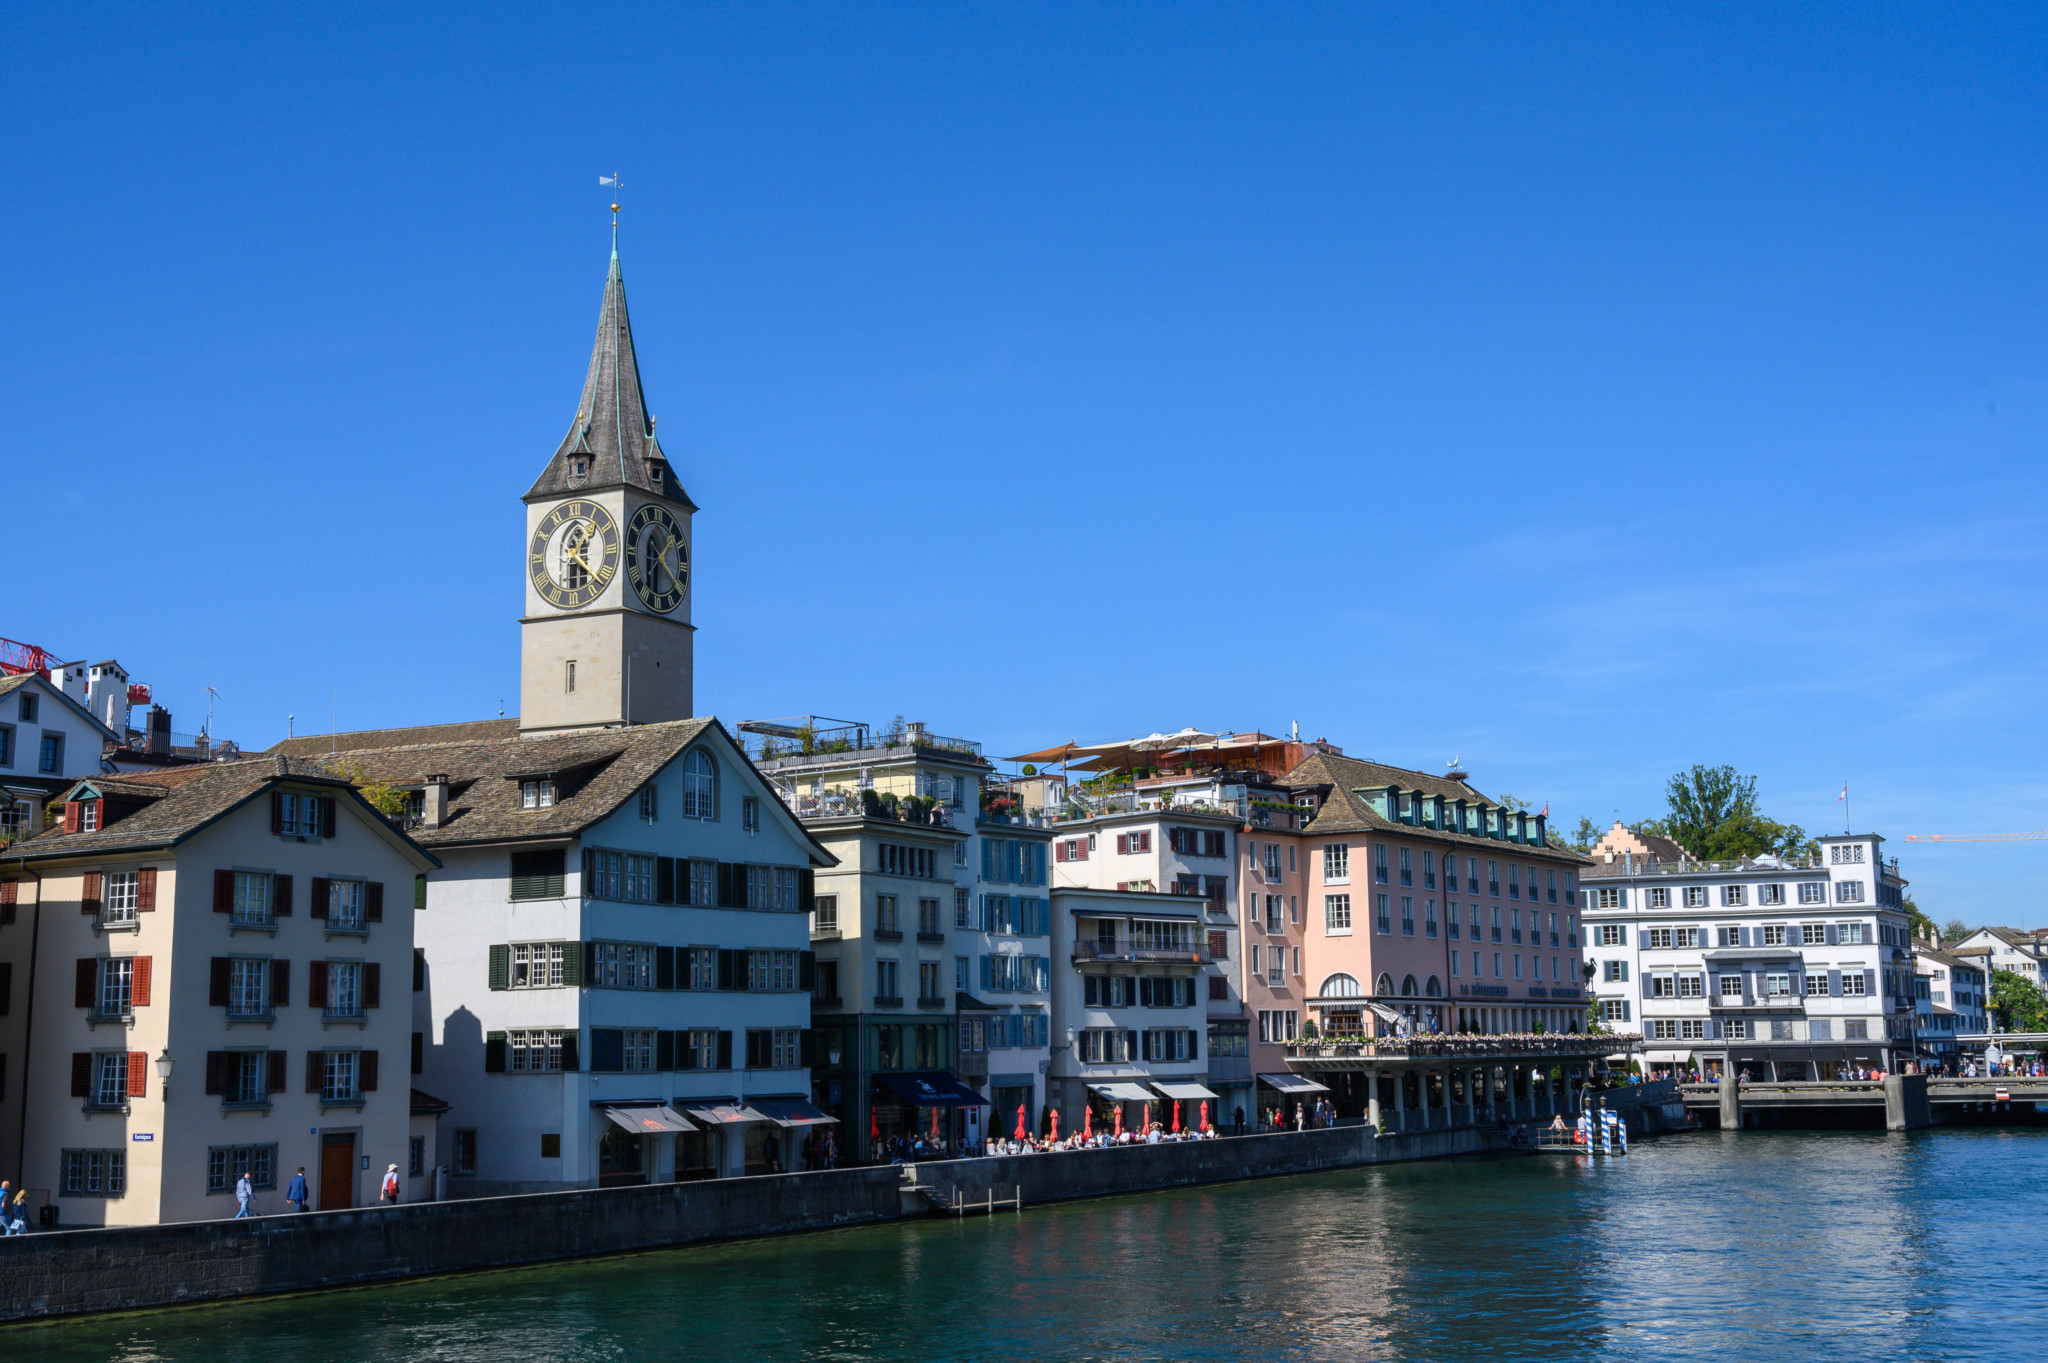 St. Peter gehört zu den Zürich Sehenswürdigkeiten